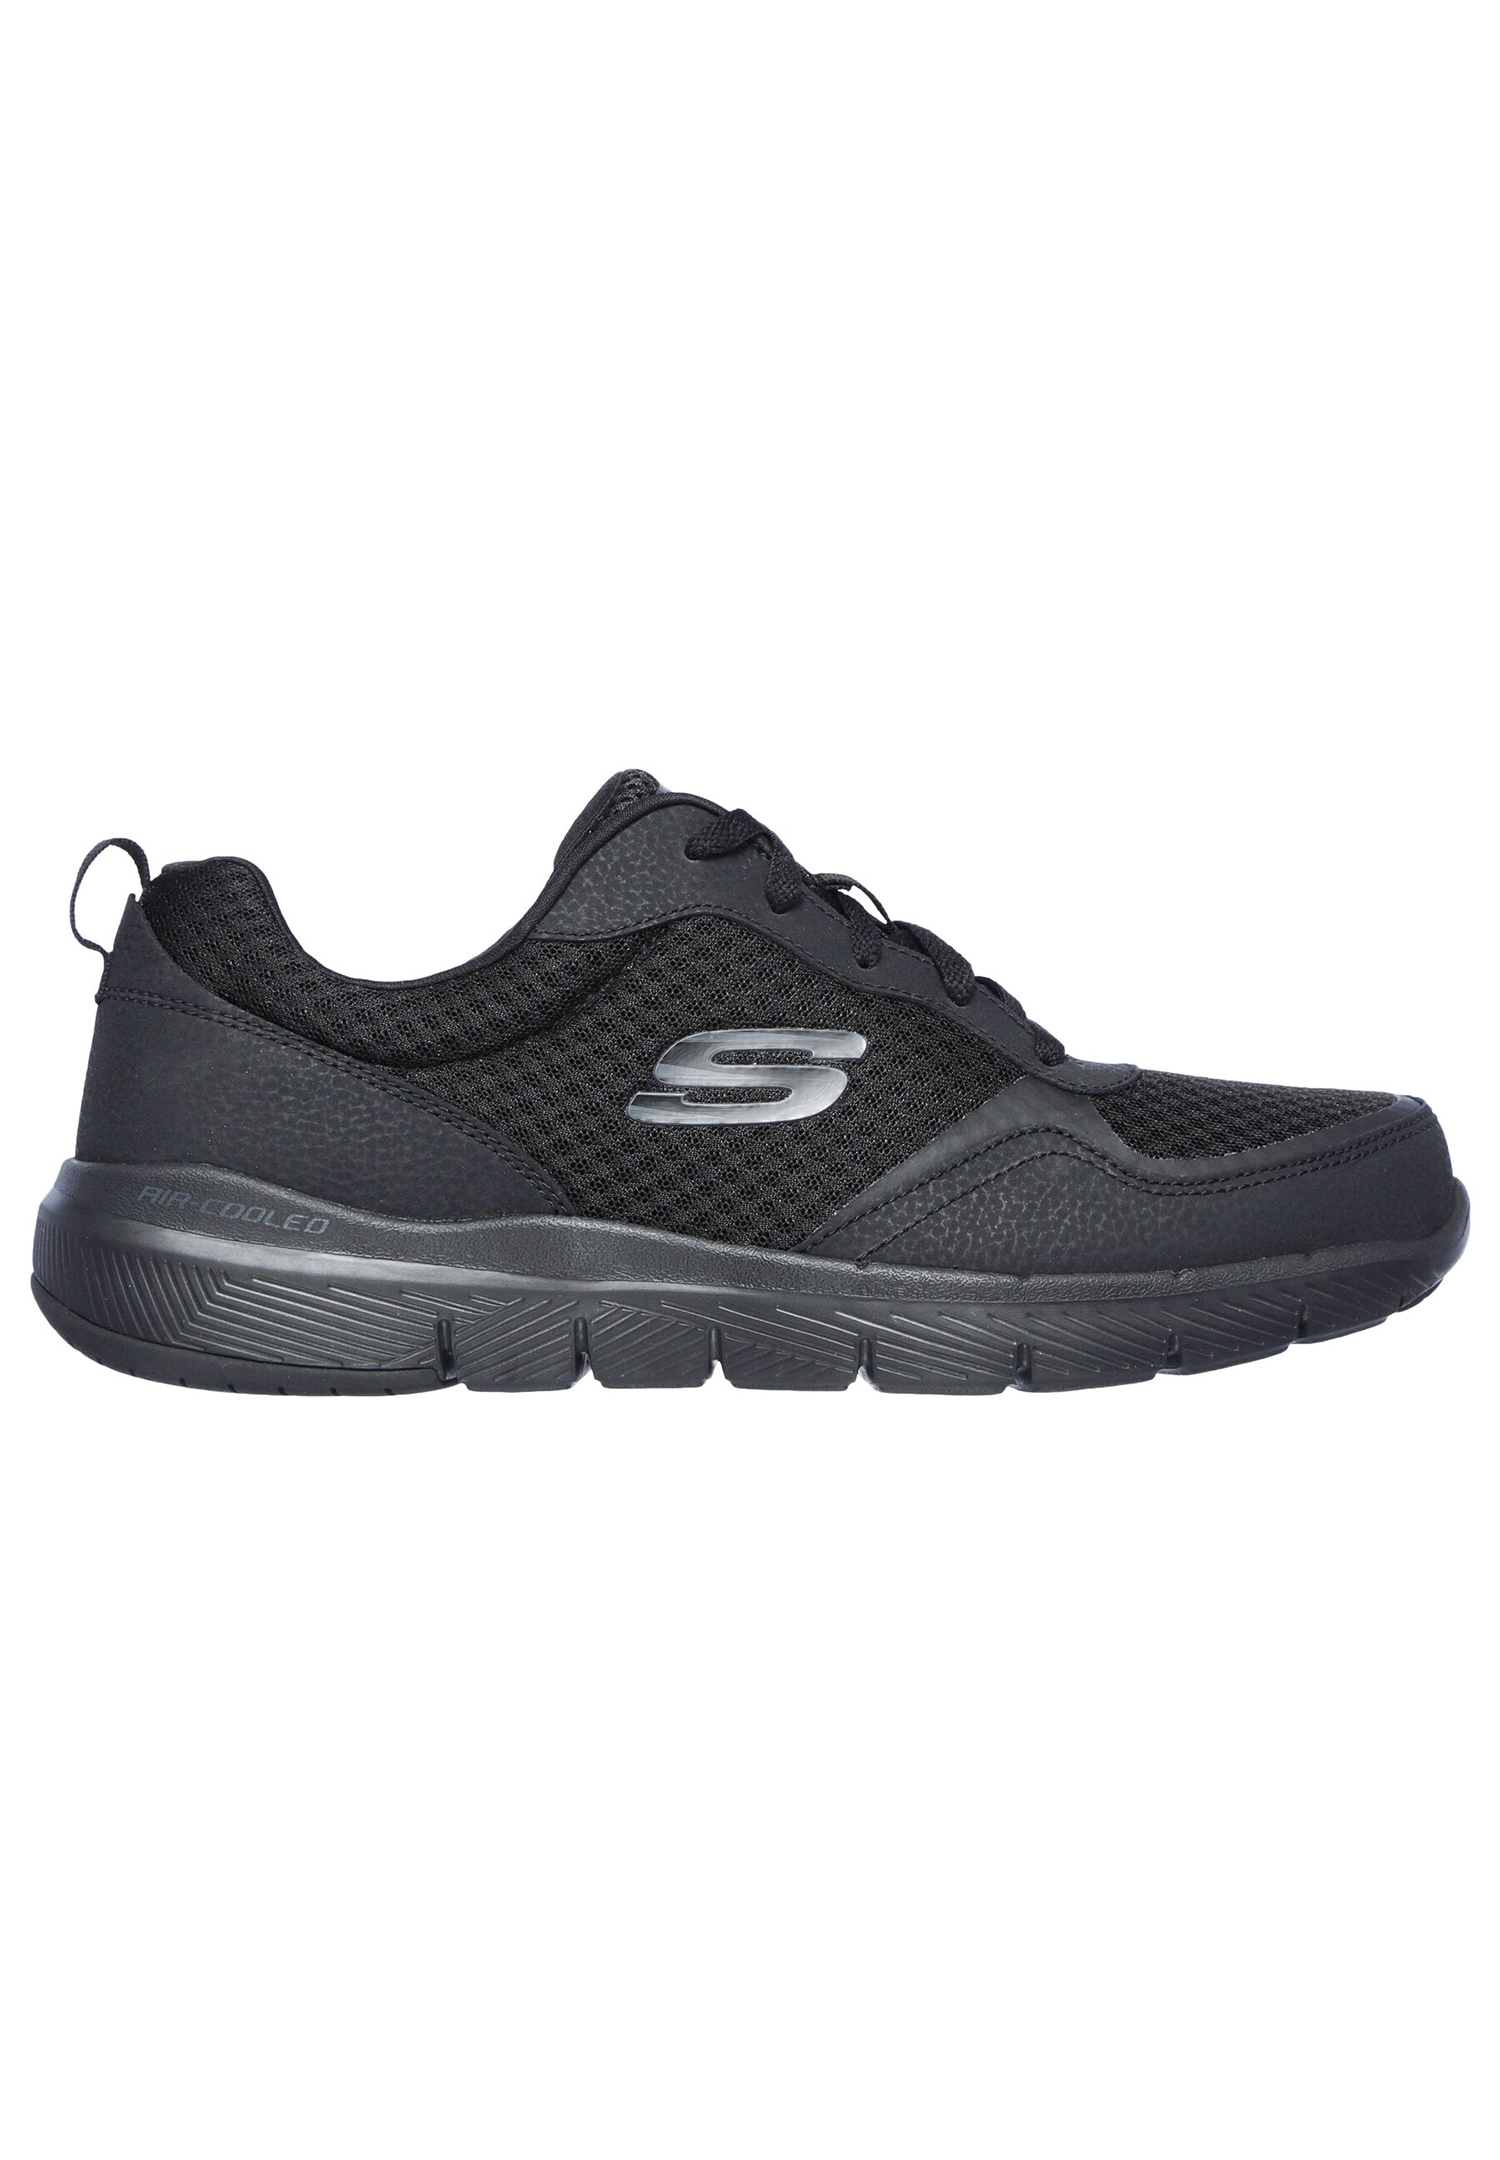 Низкие кроссовки Skechers Low FLEX ADVANTAGE 3.0, черный низкие кроссовки skechers low flex advantage 3 0 черный